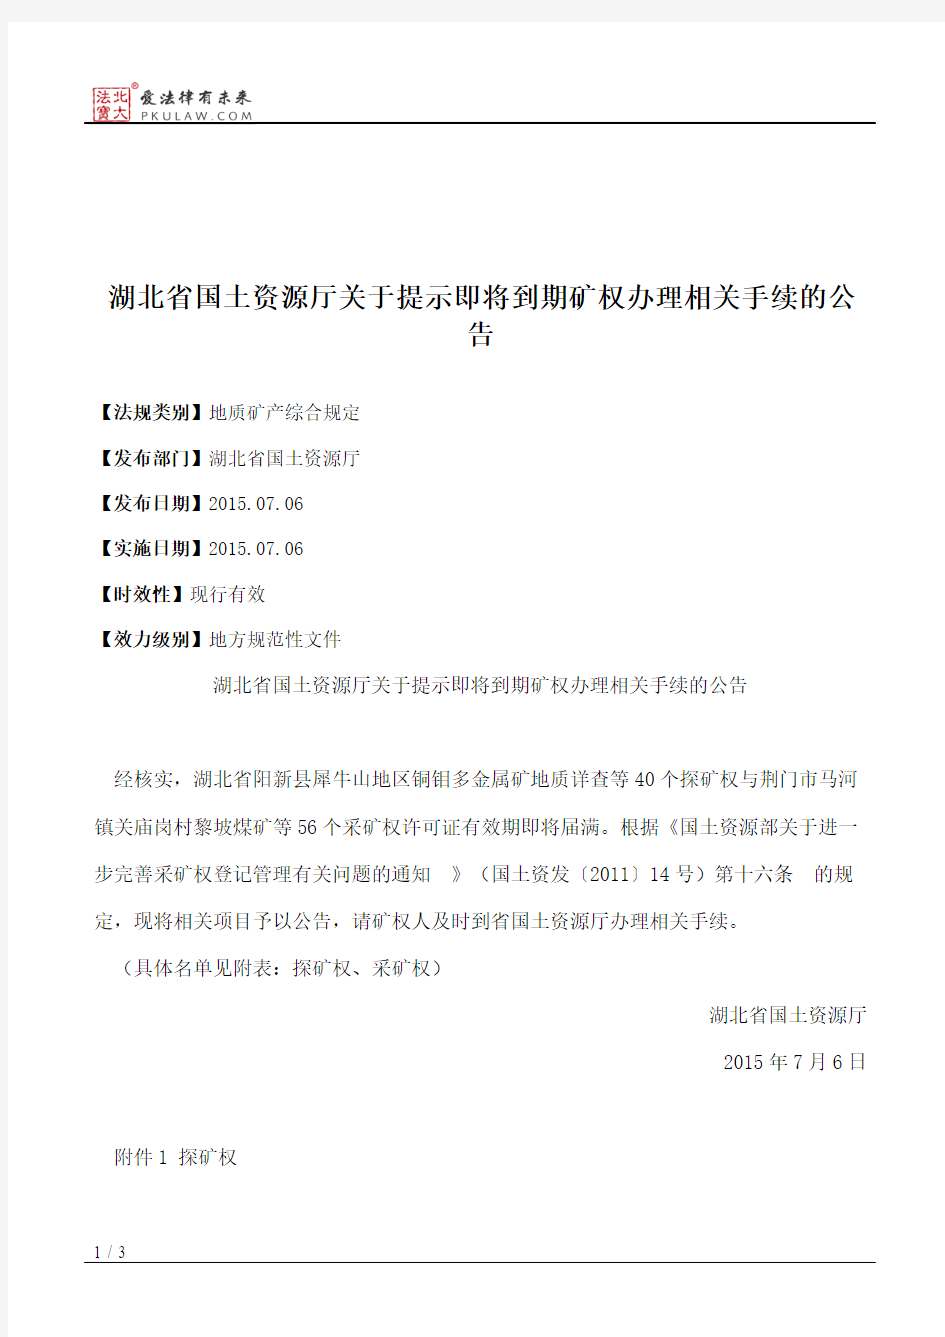 湖北省国土资源厅关于提示即将到期矿权办理相关手续的公告